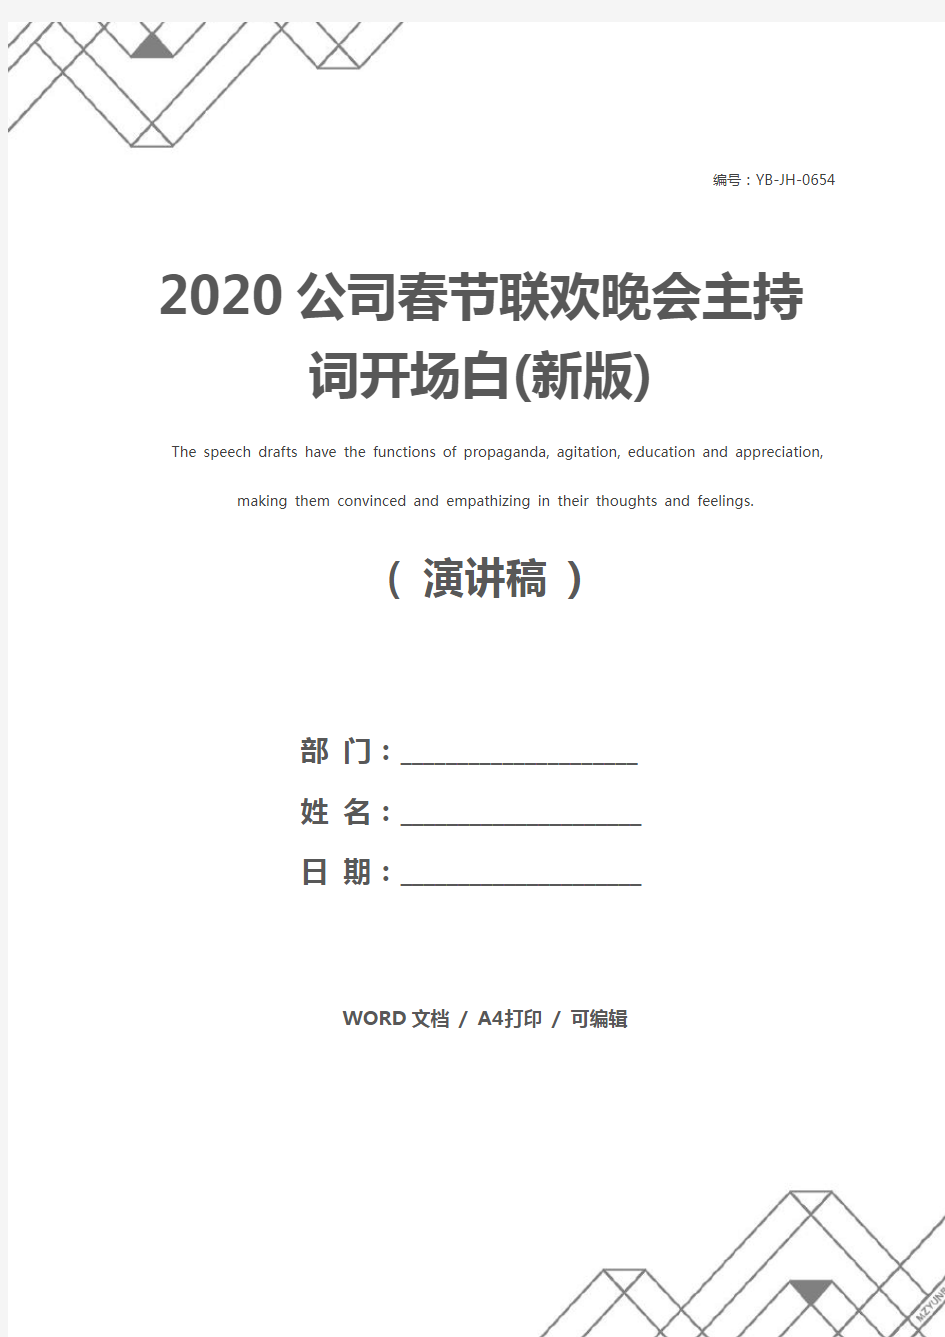 2020公司春节联欢晚会主持词开场白(新版)